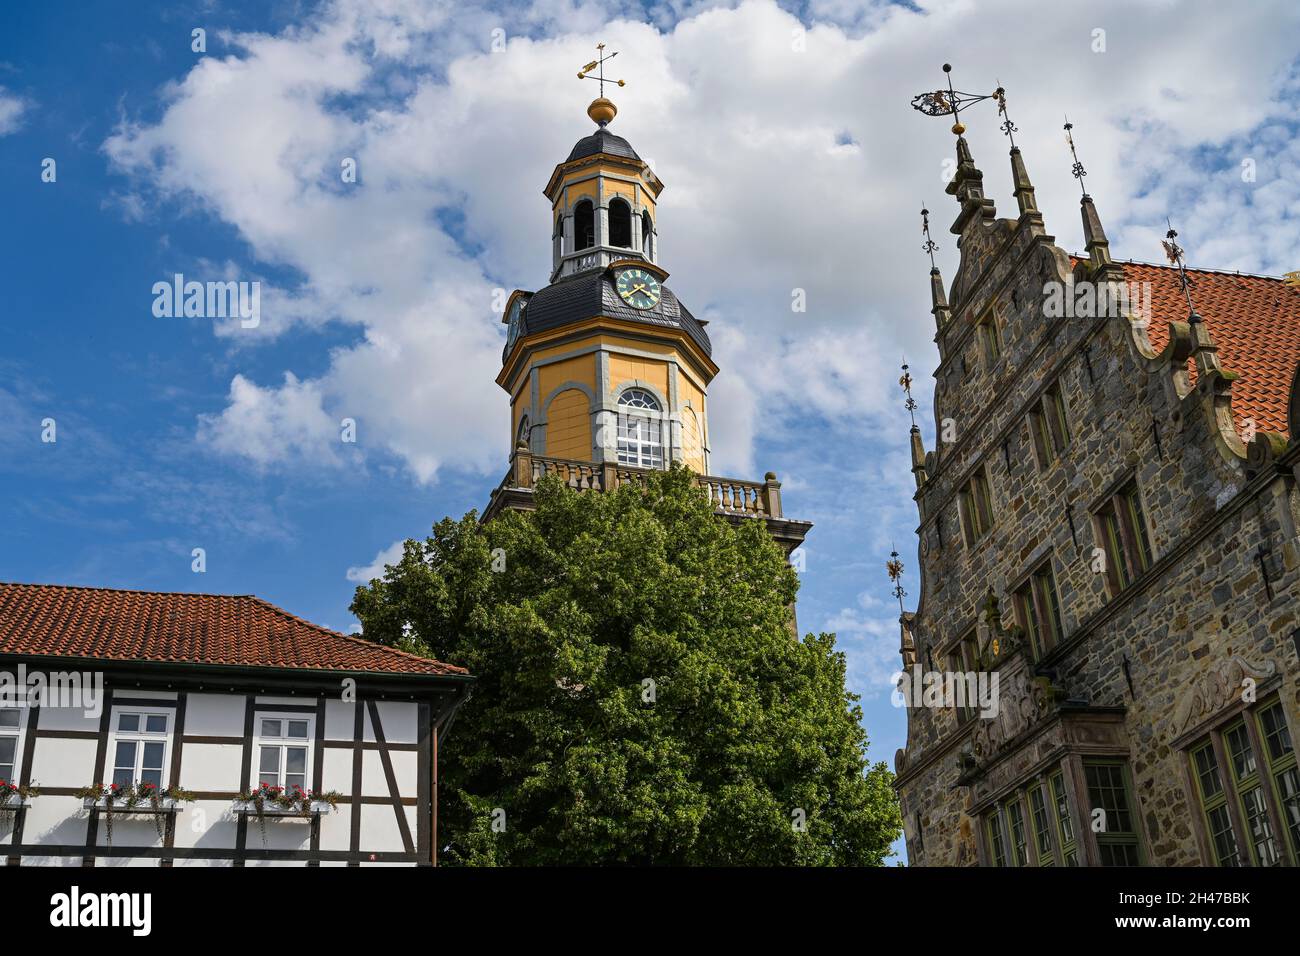 Sankt Nikolai Kirche, Altes Rathaus, Marktplatz, Altstadt, Rinteln, Landkreis Schaumburg, Niedersachsen, Deutschland Stock Photo